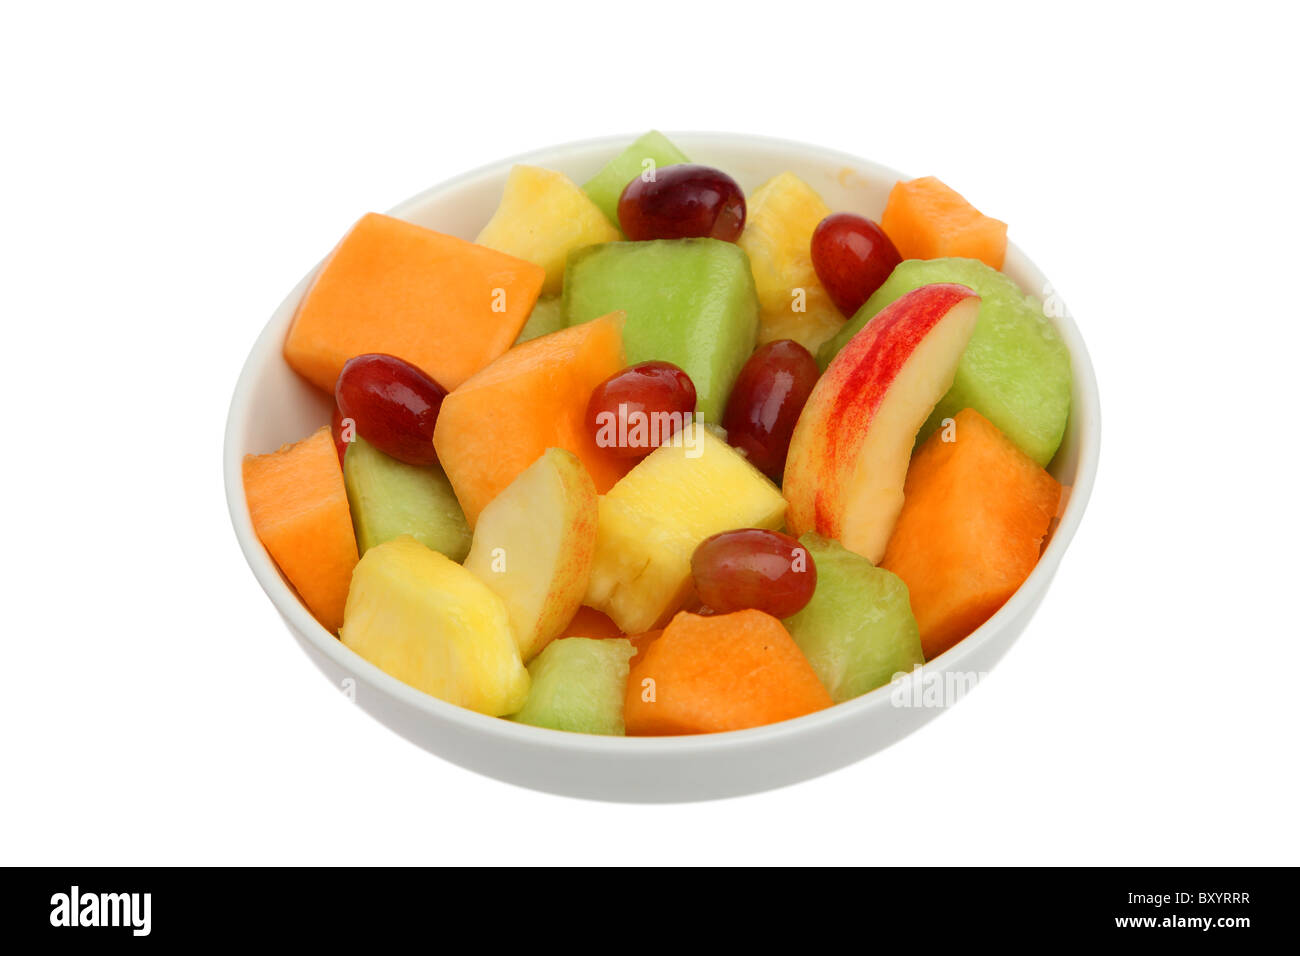 Bowl of fresh fruit on white background Stock Photo